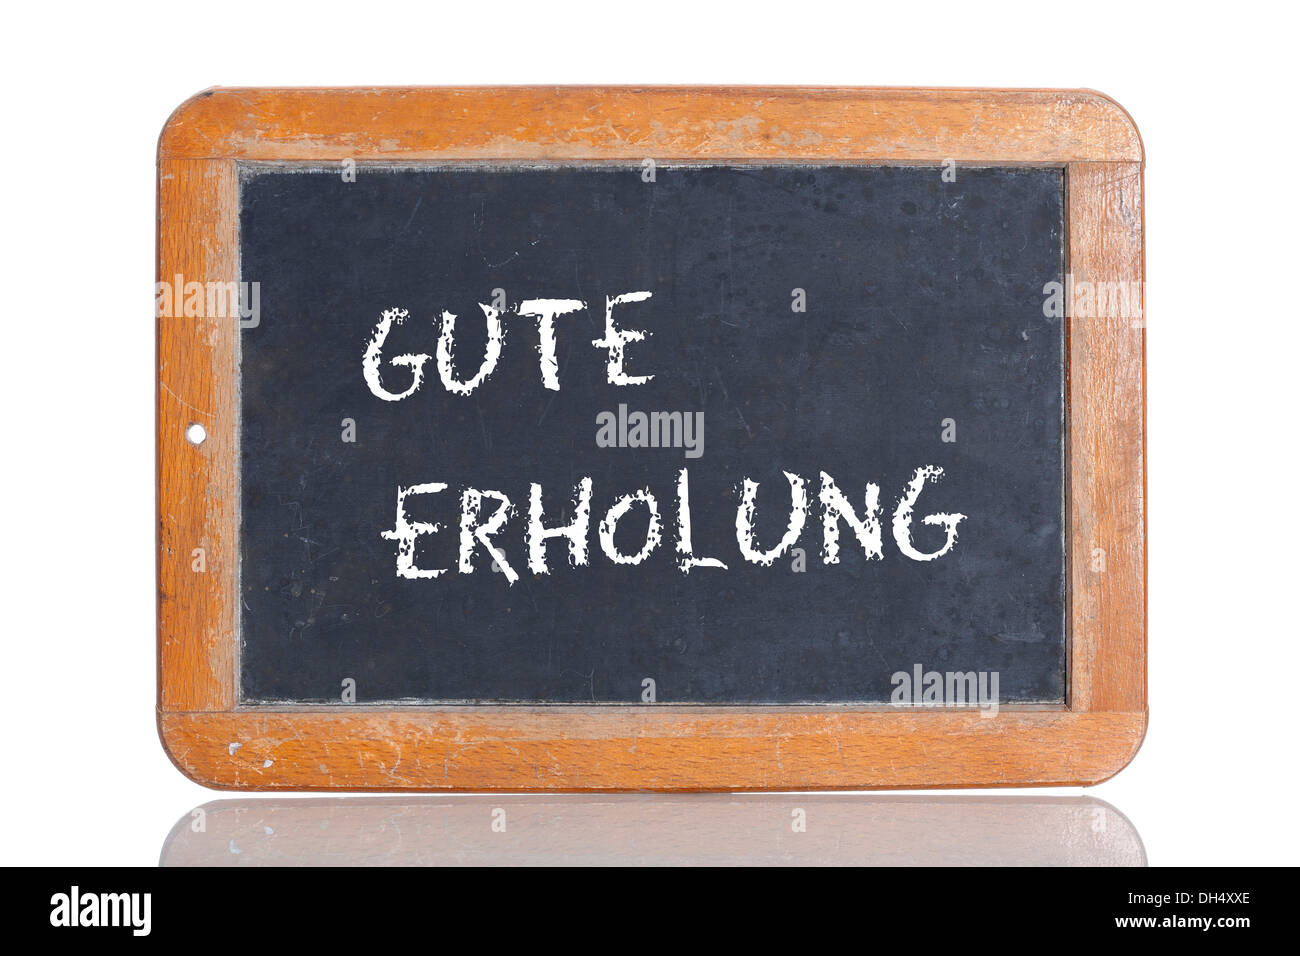 Ancienne école tableau avec les mots GUTE ERHOLUNG, allemand pour avoir un bon repos Banque D'Images